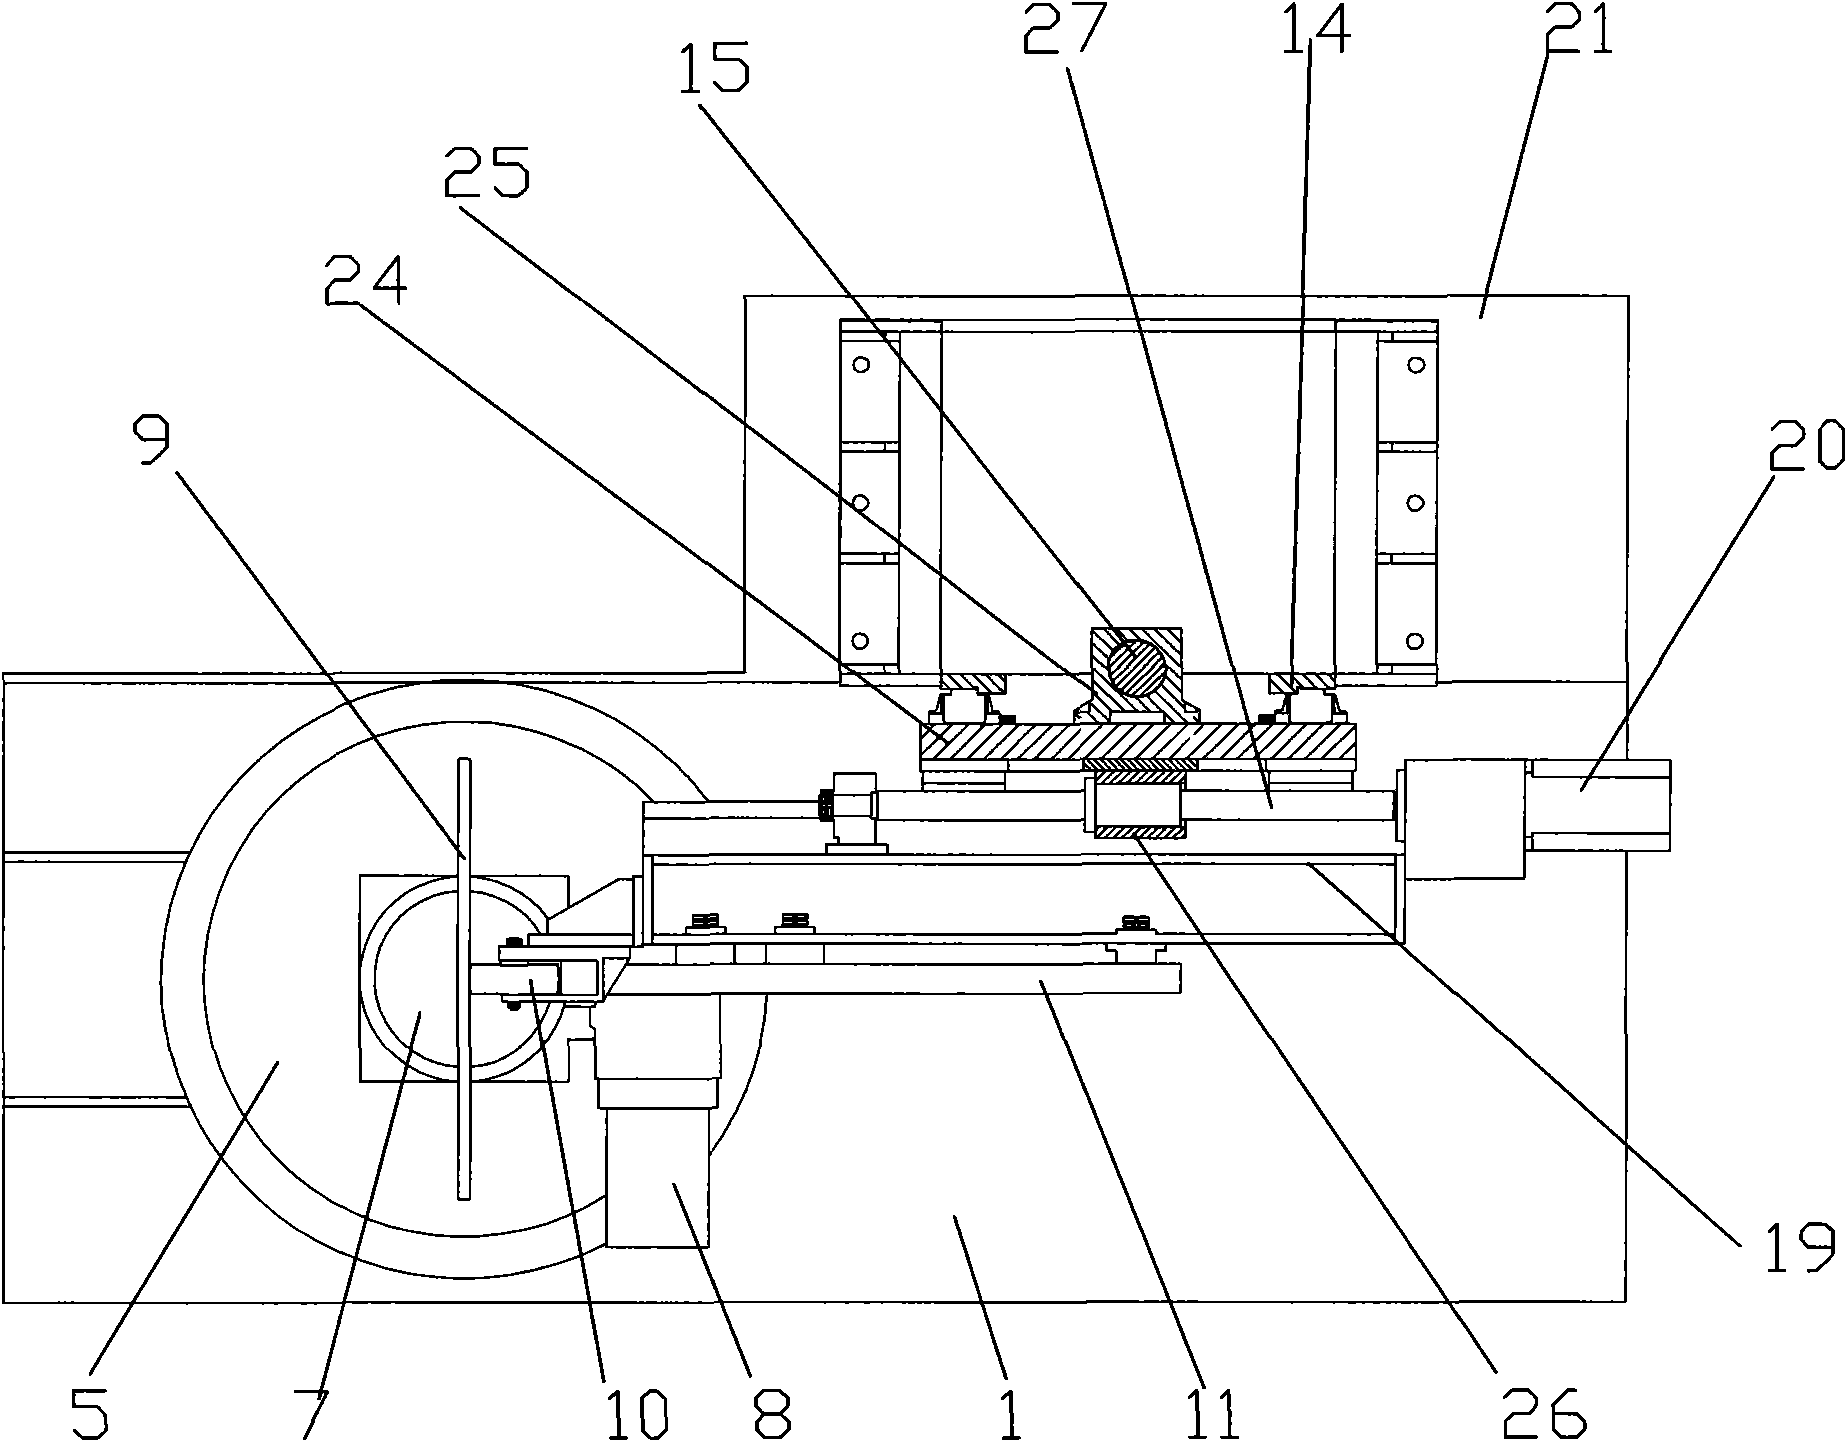 Coated abrasive grinder of propeller blade